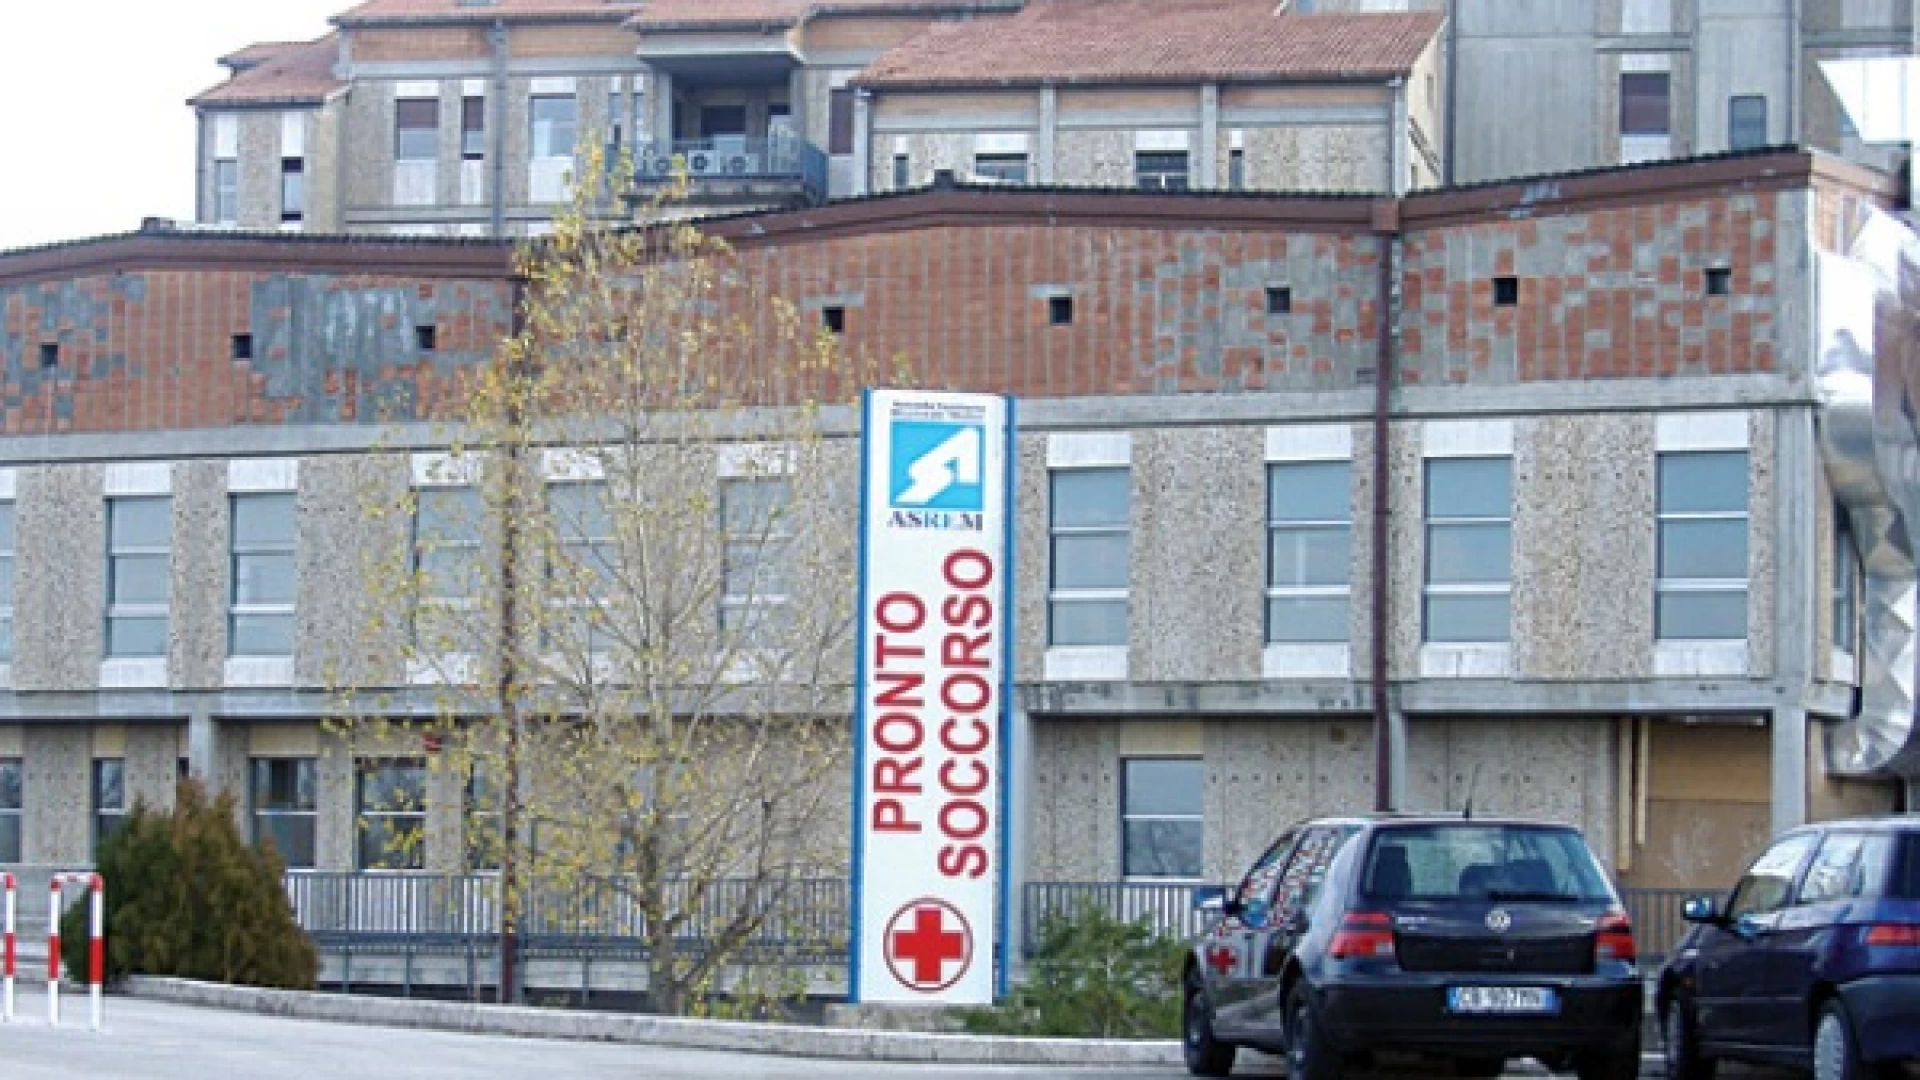 Emergenza Covid in Molise: oggi 21 guariti, un trasferimento di un paziente e un solo positivo. Processati 296 tamponi.